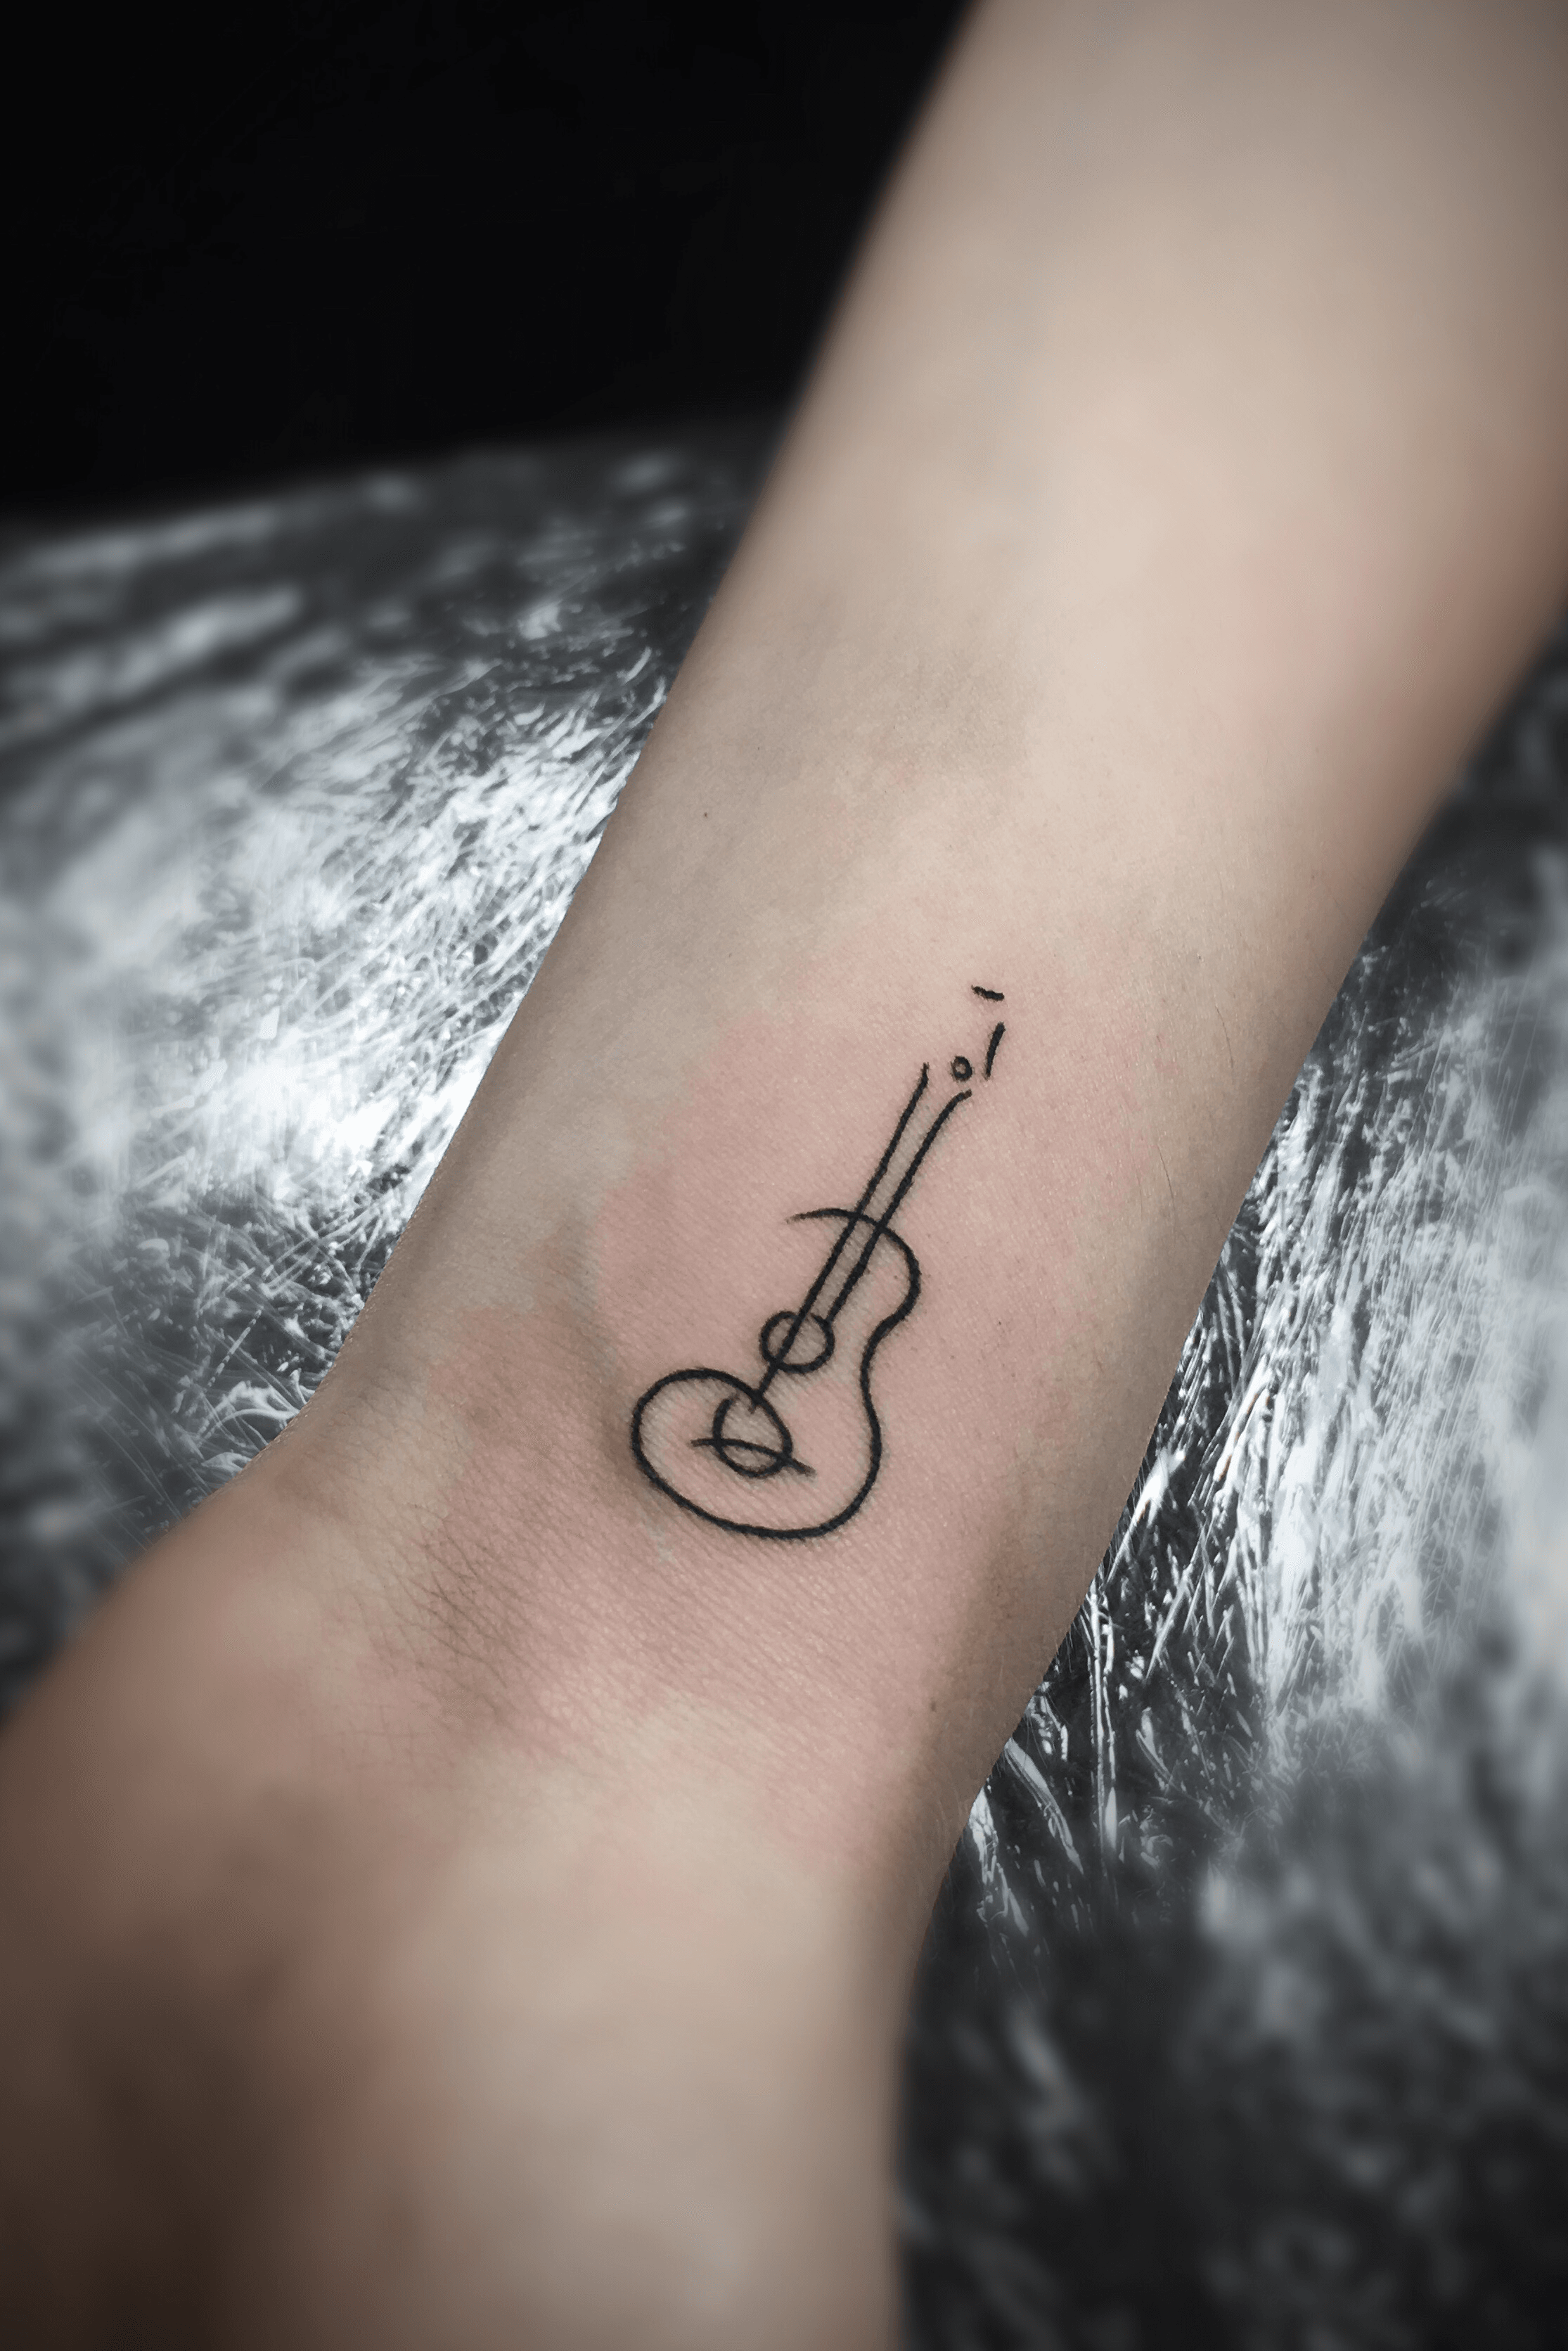 Tattoo uploaded by Barabas Joco  Small guitar tattoo  Tattoodo